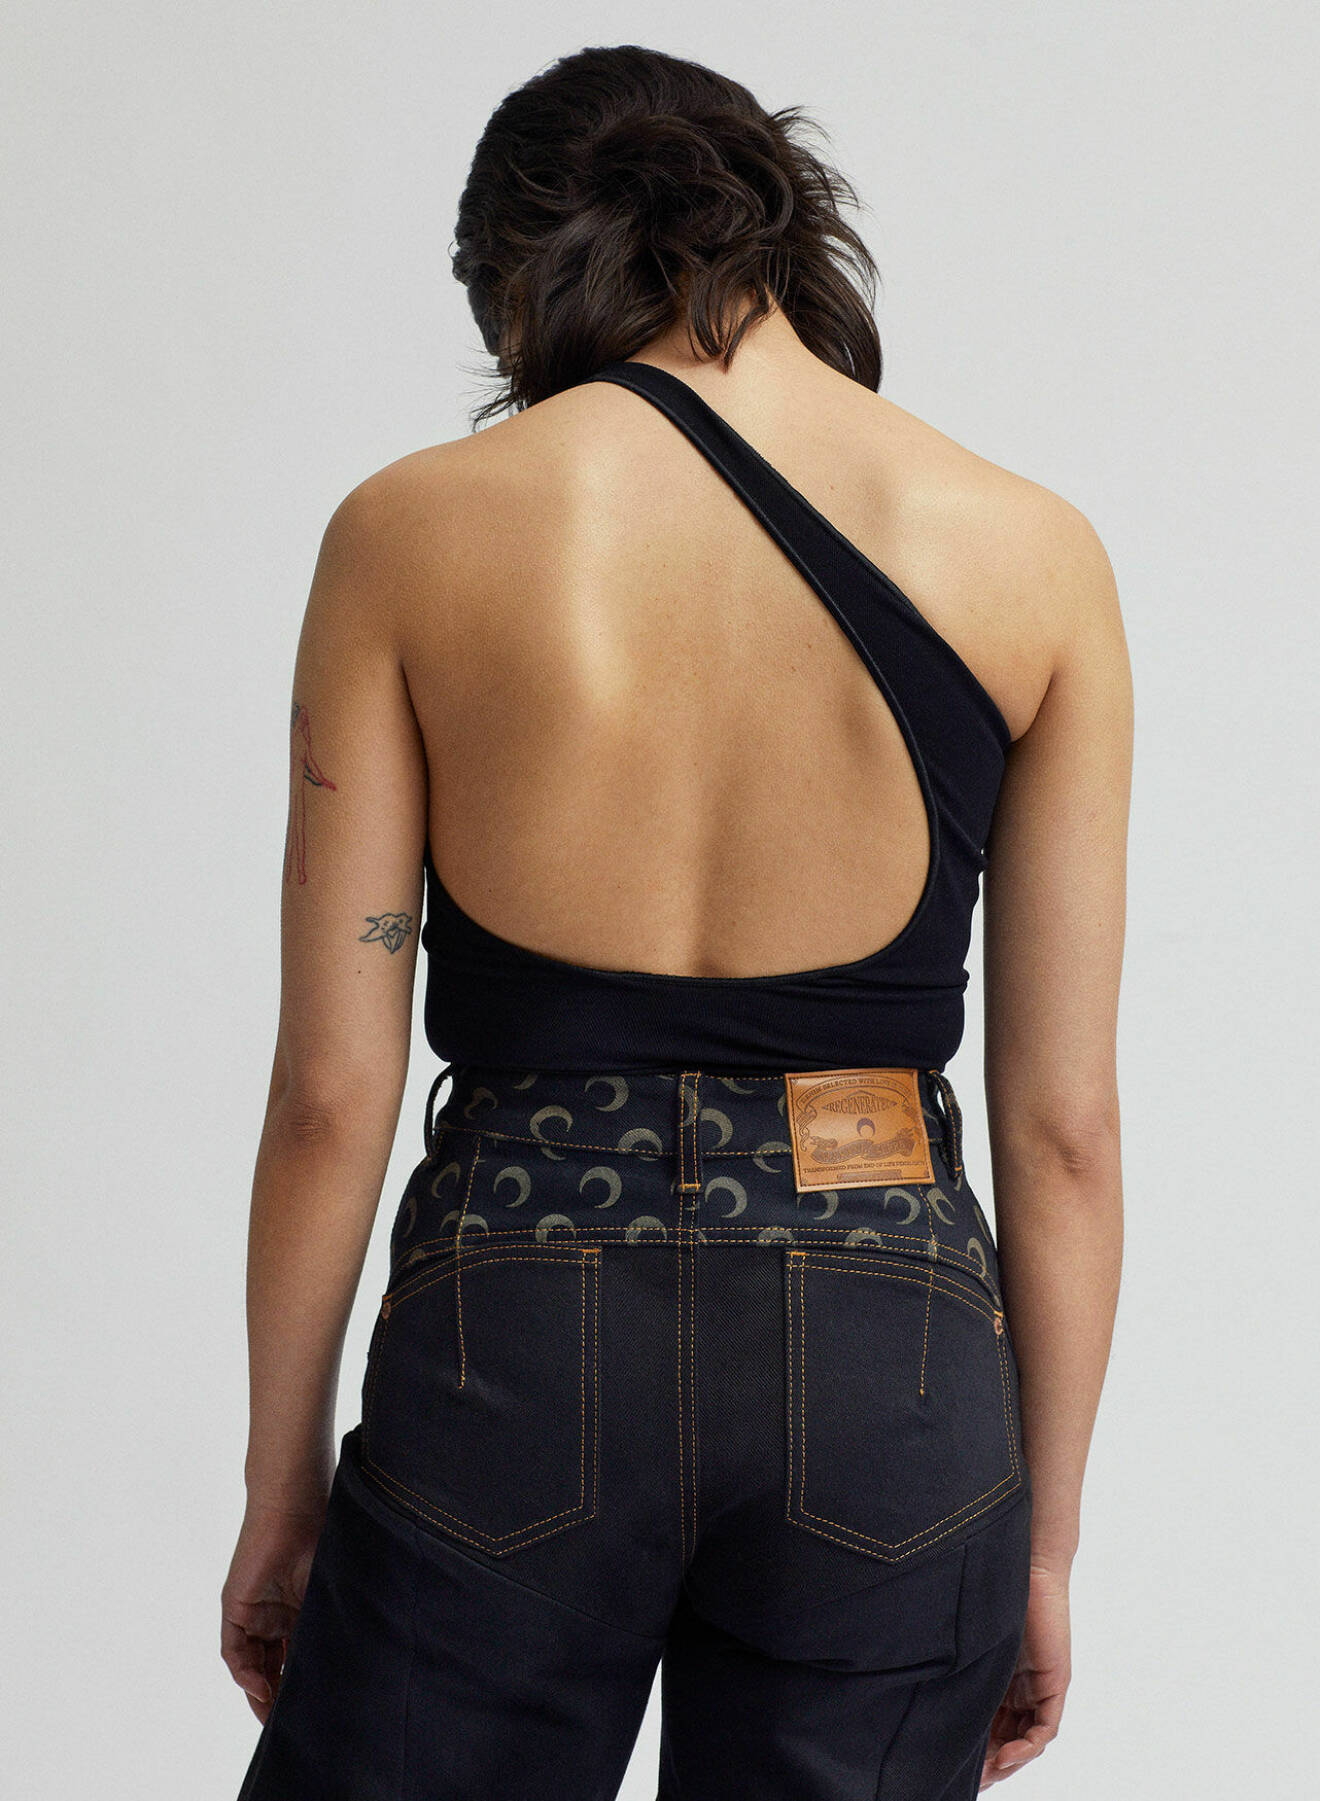 Modellen bär en topp med bar rygg av polyamid och elastan certifierat med Oekotex 100 tillsammans med upcyclade jeans